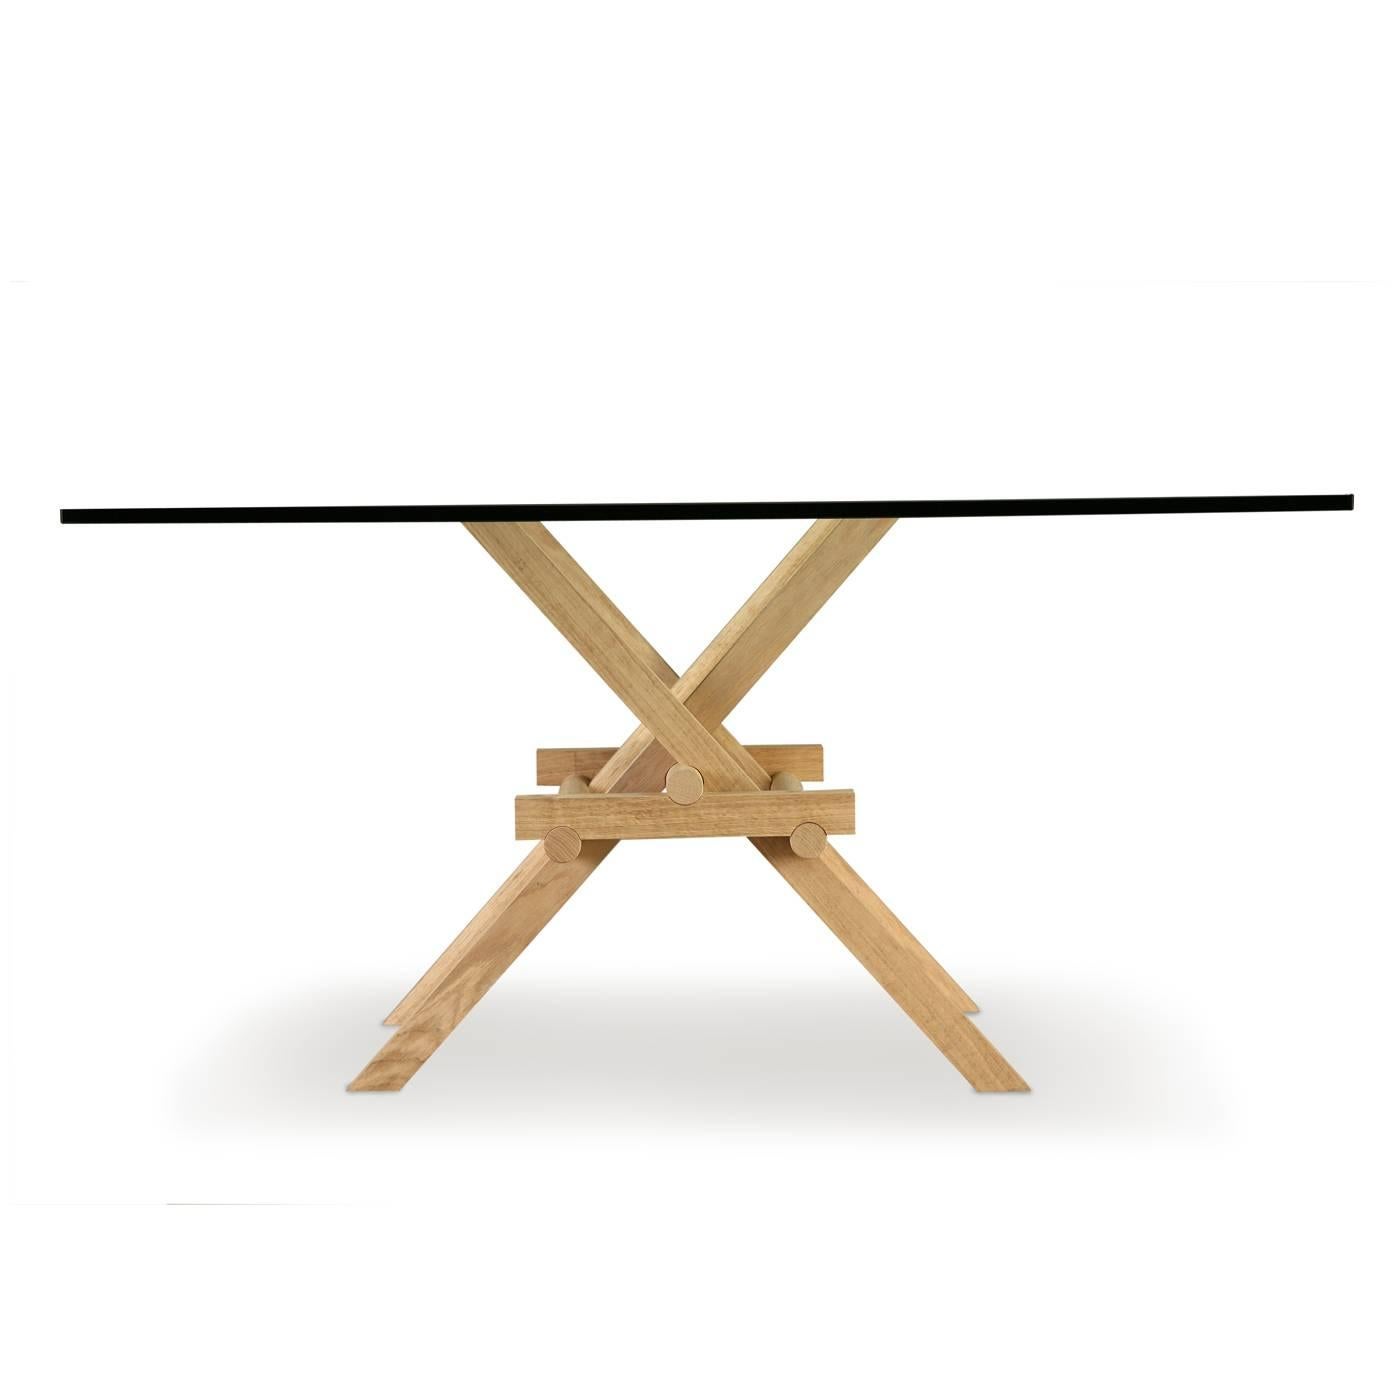 Marco Ferreri hat sich bei der Gestaltung dieses Esstisches von den beweglichen Brücken Leonardo da Vincis inspirieren lassen. Die Beine aus massivem Eschenholz sind durch eine geschickte Kombination von Gelenken miteinander verbunden und verleihen